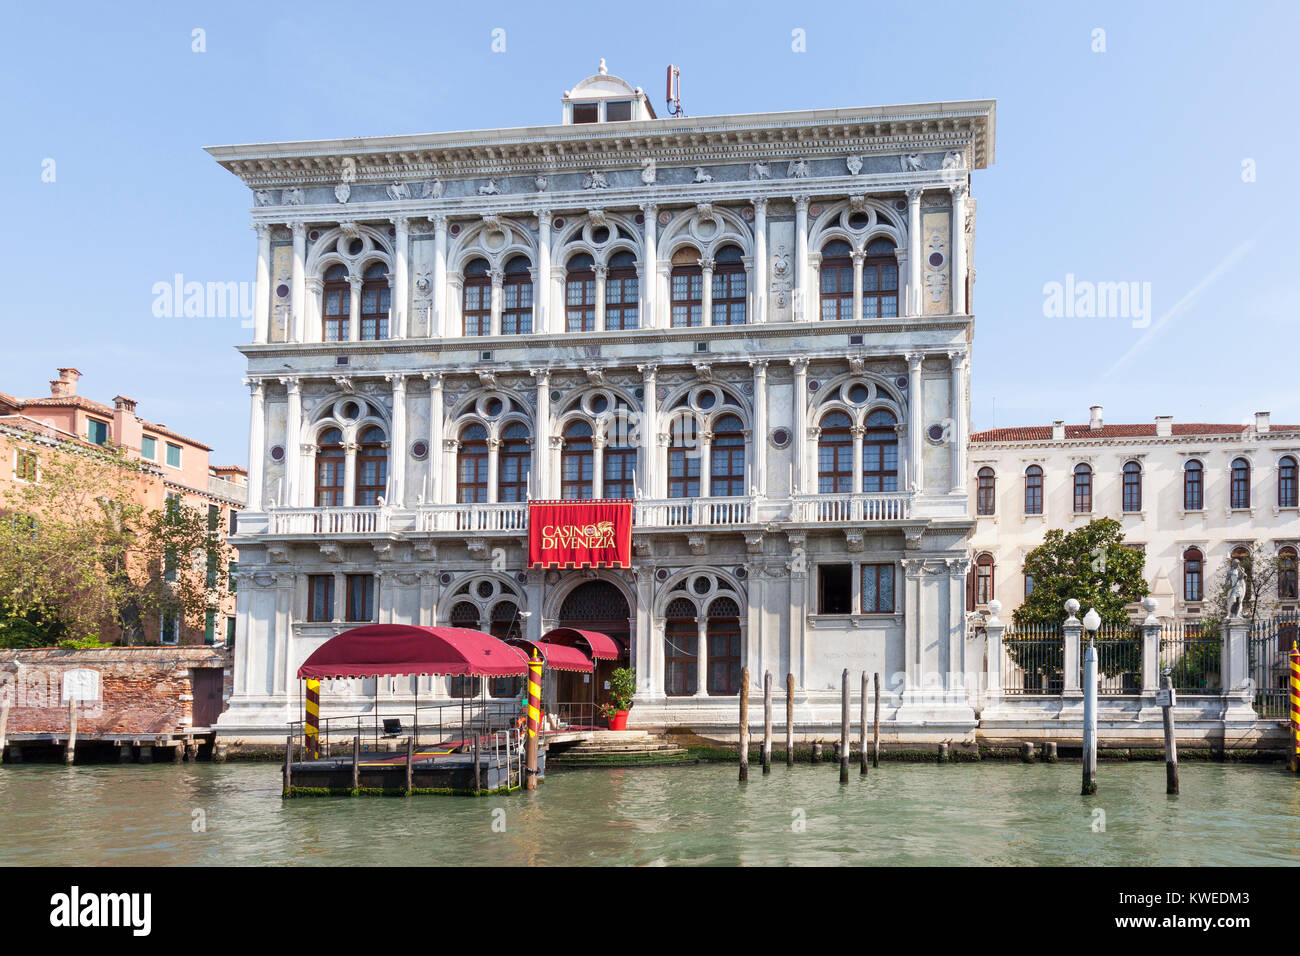 Casino di Venezia, Cannaregio, Grand Canal, Venice, Italy reputedly the ...